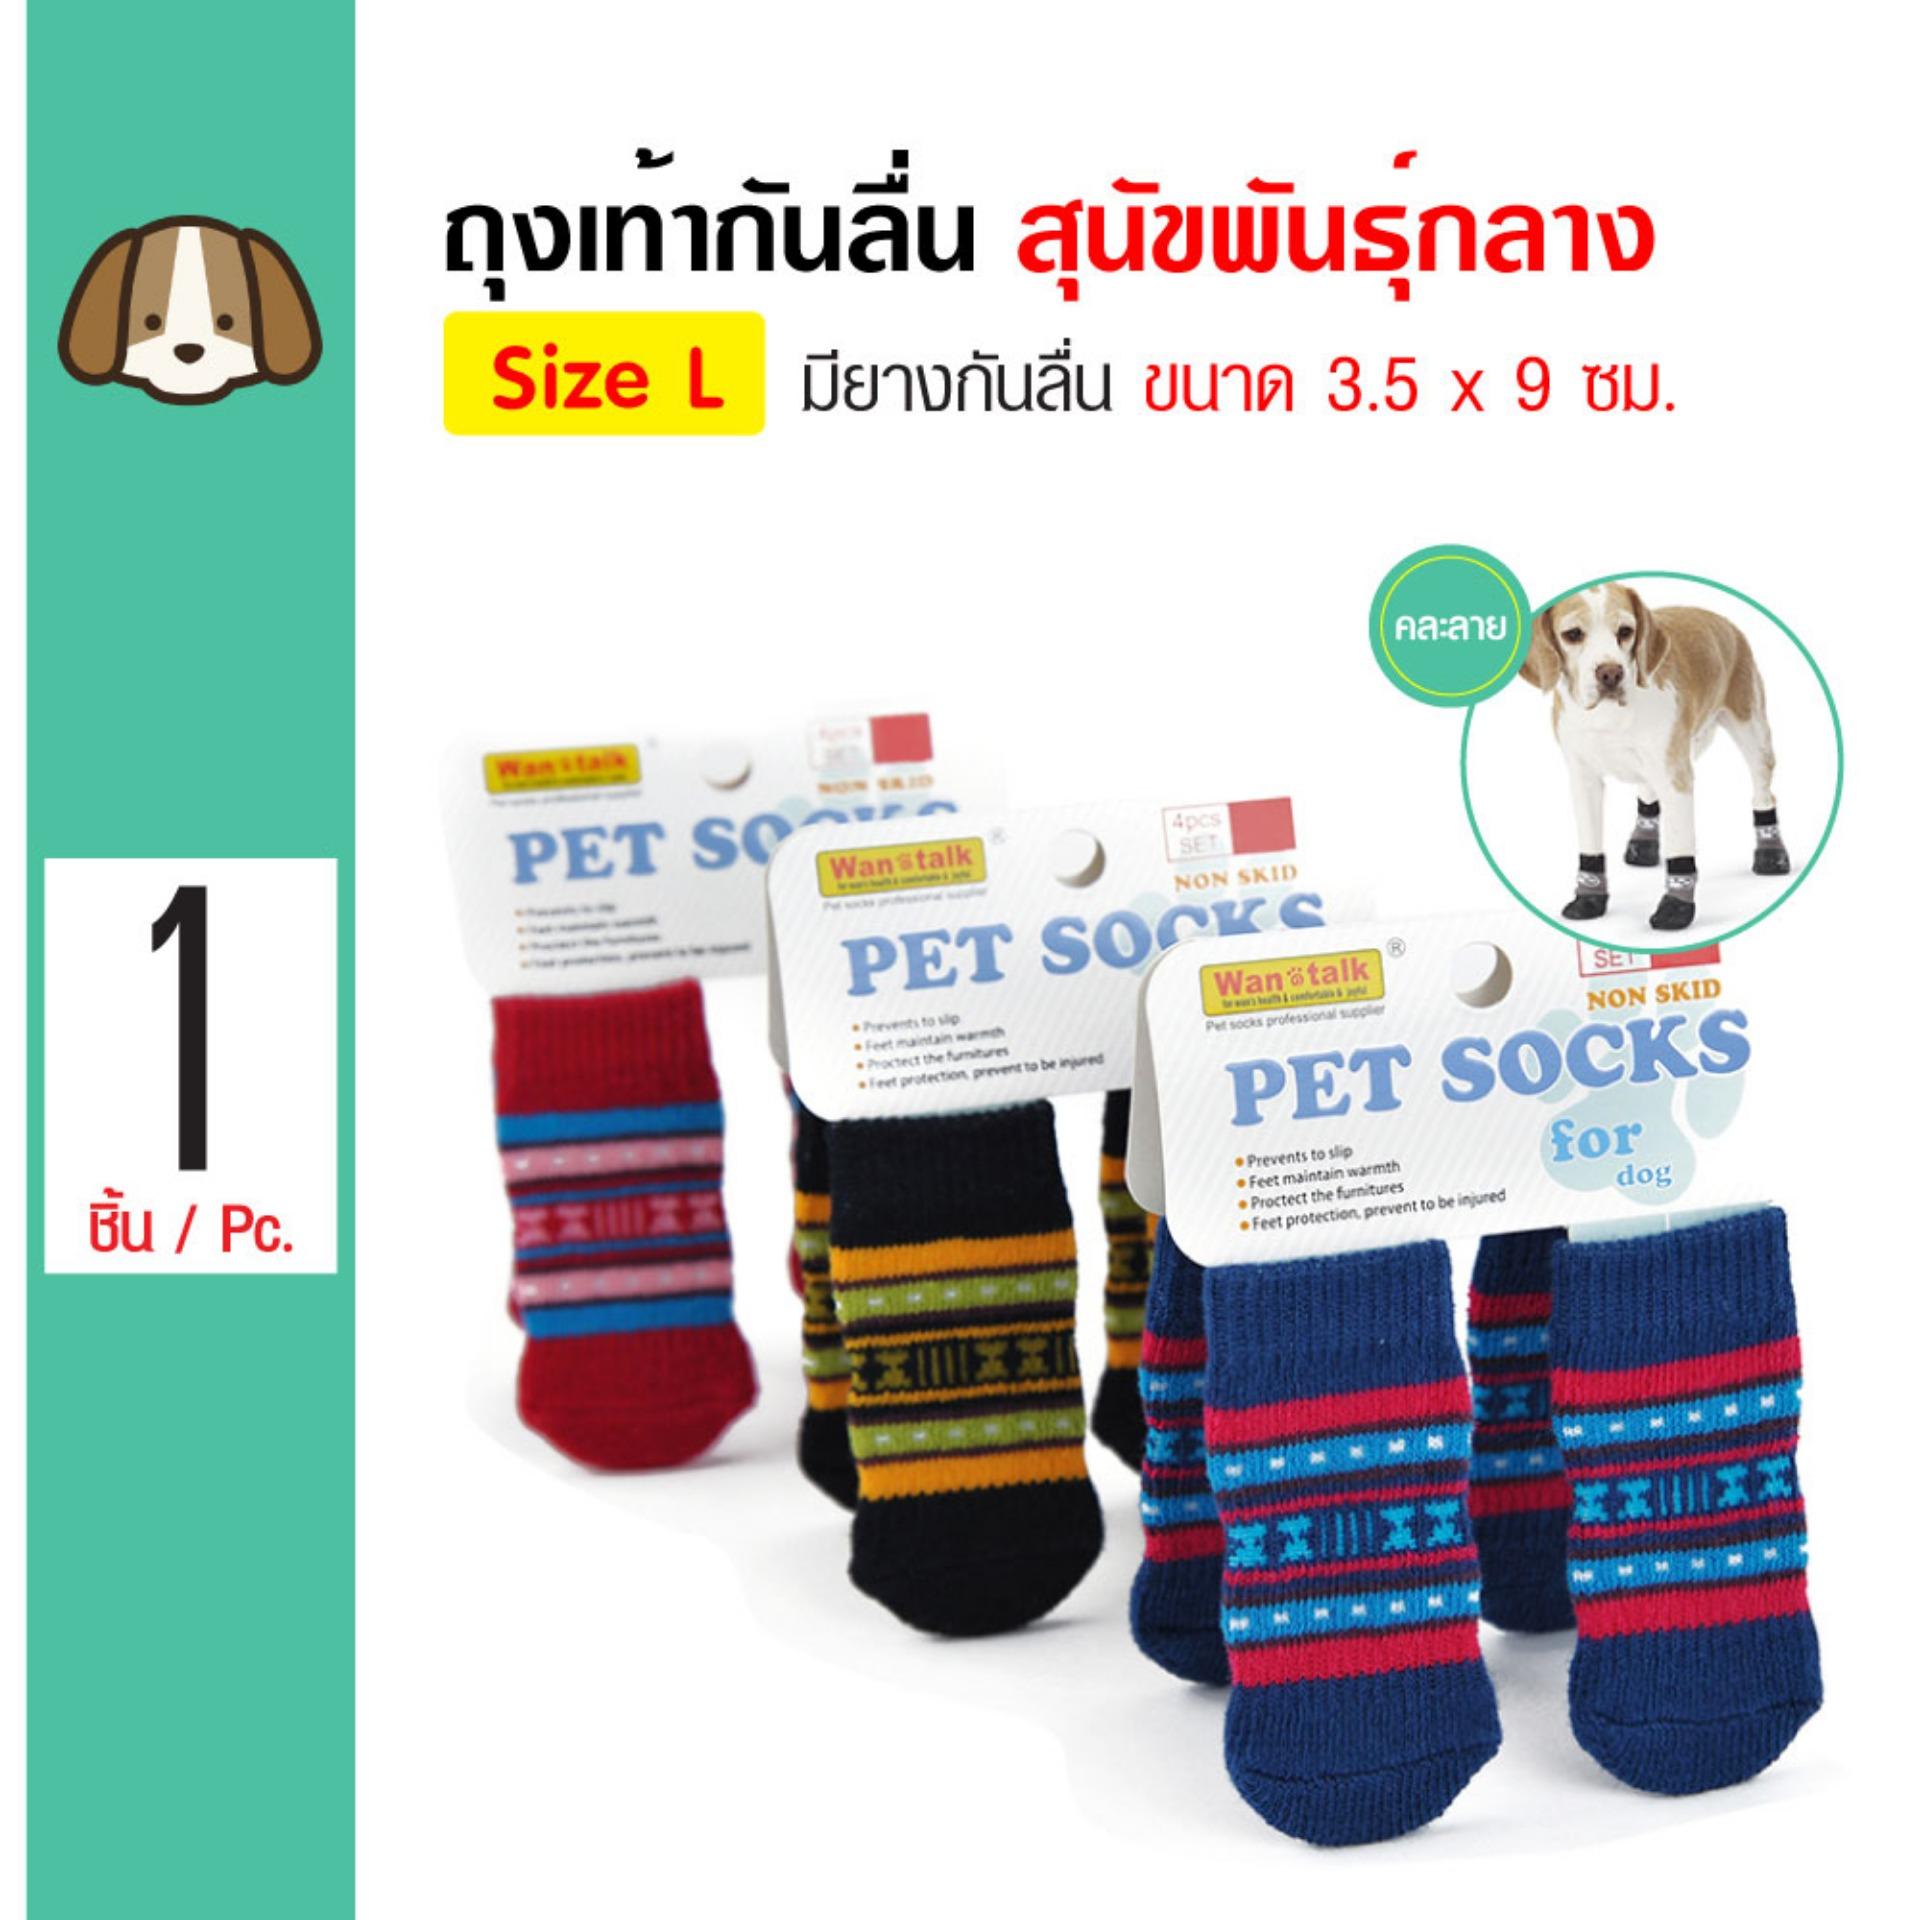 Dog Socks ถุงเท้าสุนัข พร้อมยางกันลื่น สำหรับสุนัขพันธุ์กลาง Size L ขนาด 3.5x9 ซม. (4 ข้าง/ แพ็ค)